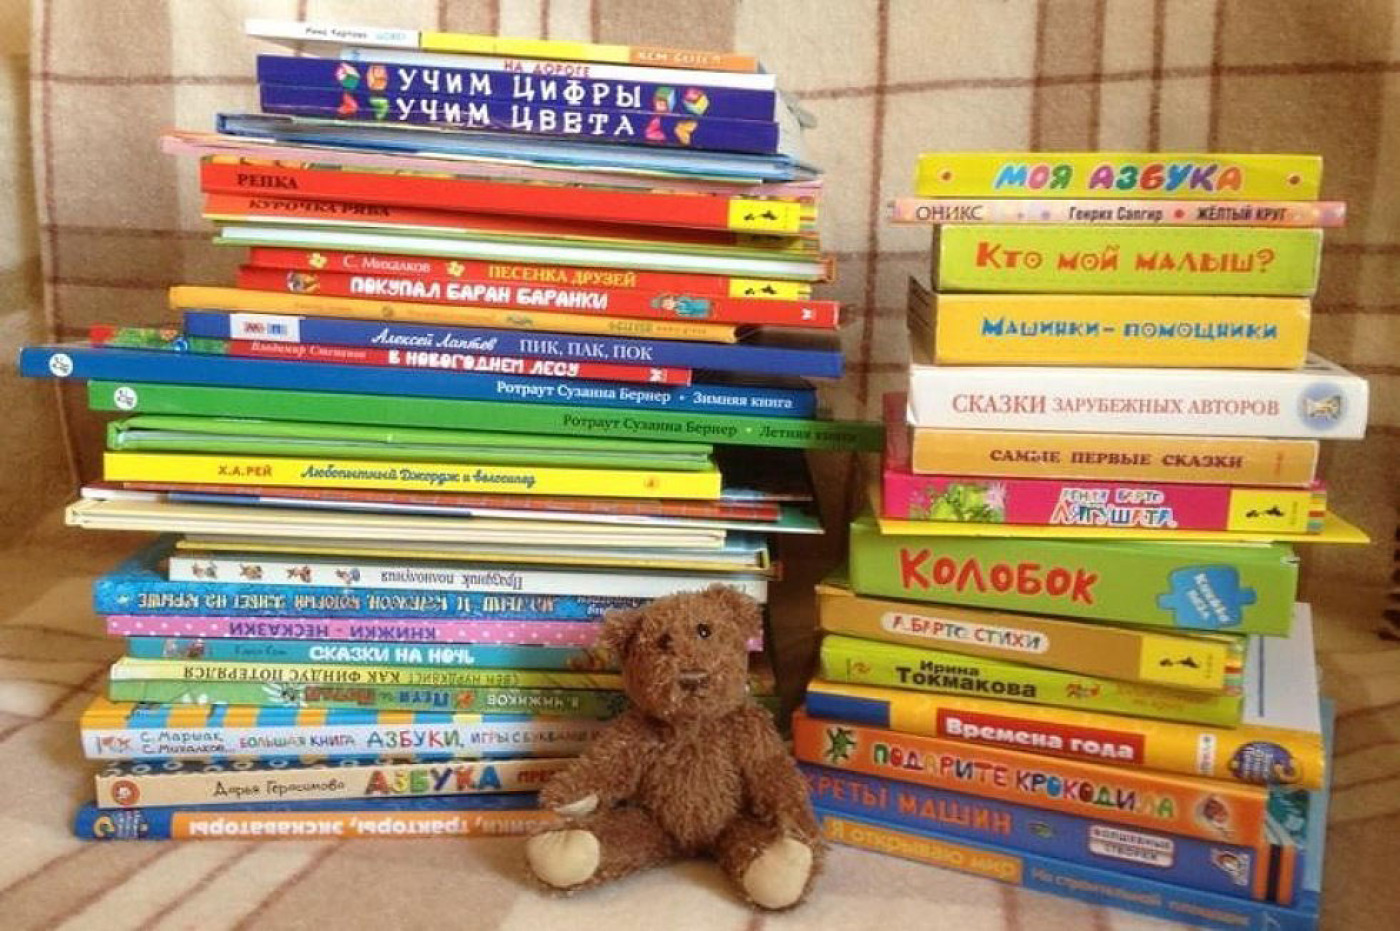 Сайт книга дети. Детские книжки. Интересные детские книги. Детская литература. Детская литература книги.